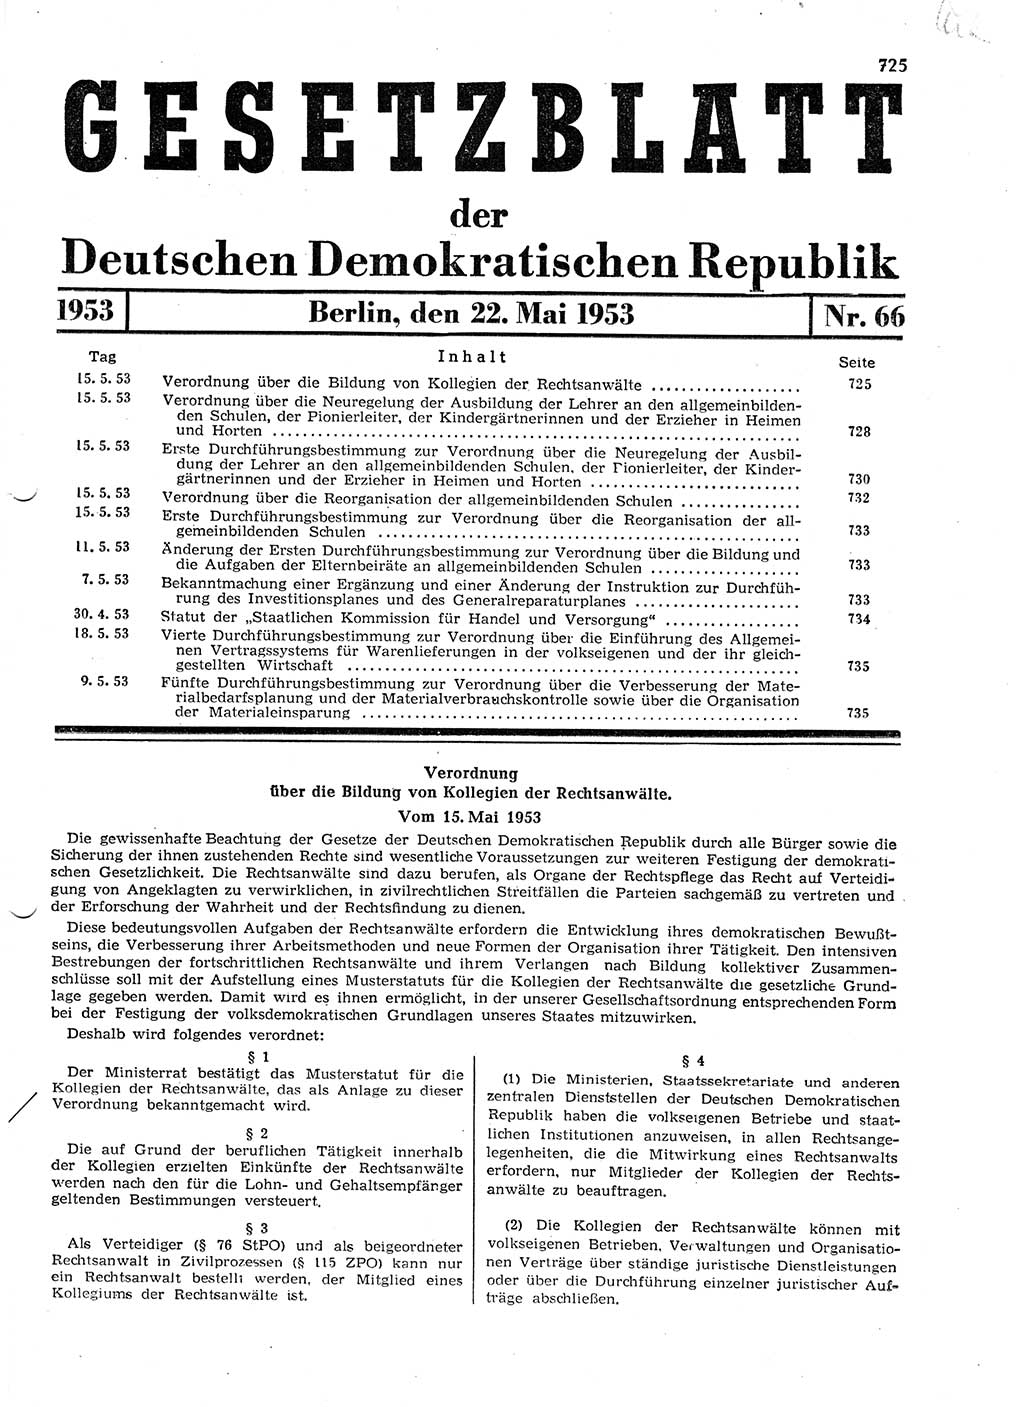 Gesetzblatt (GBl.) der Deutschen Demokratischen Republik (DDR) 1953, Seite 725 (GBl. DDR 1953, S. 725)